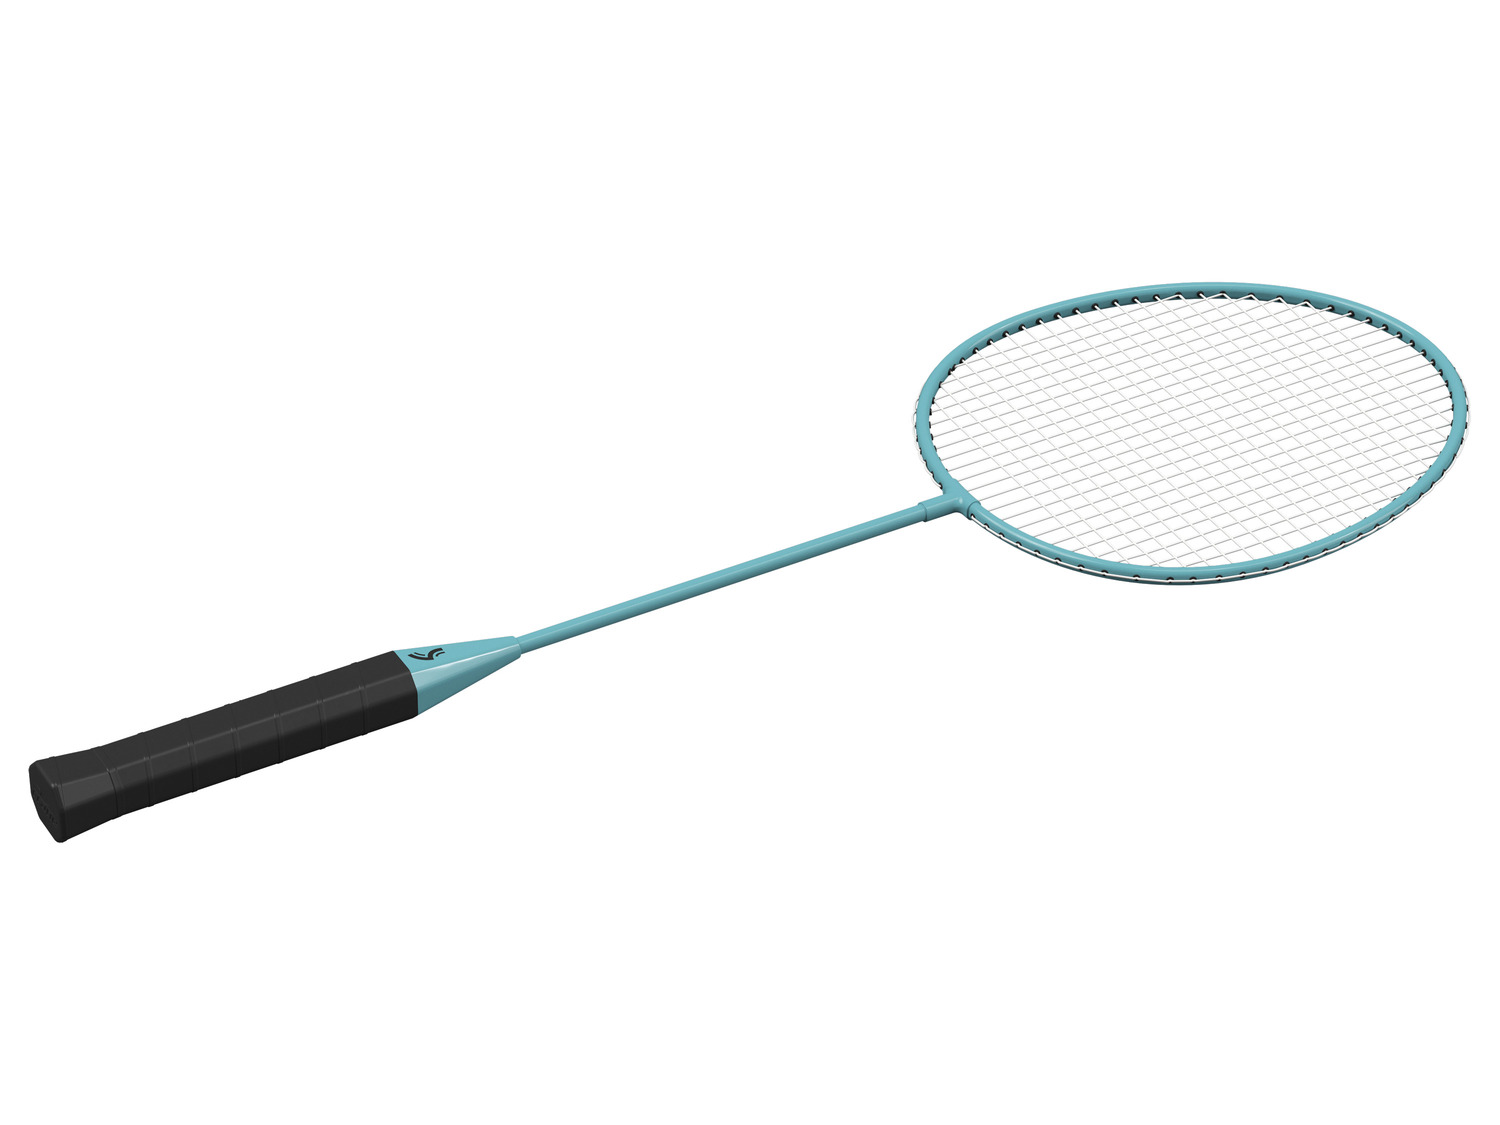 CRIVIT Set de badminton Acheter en ligne | LIDL